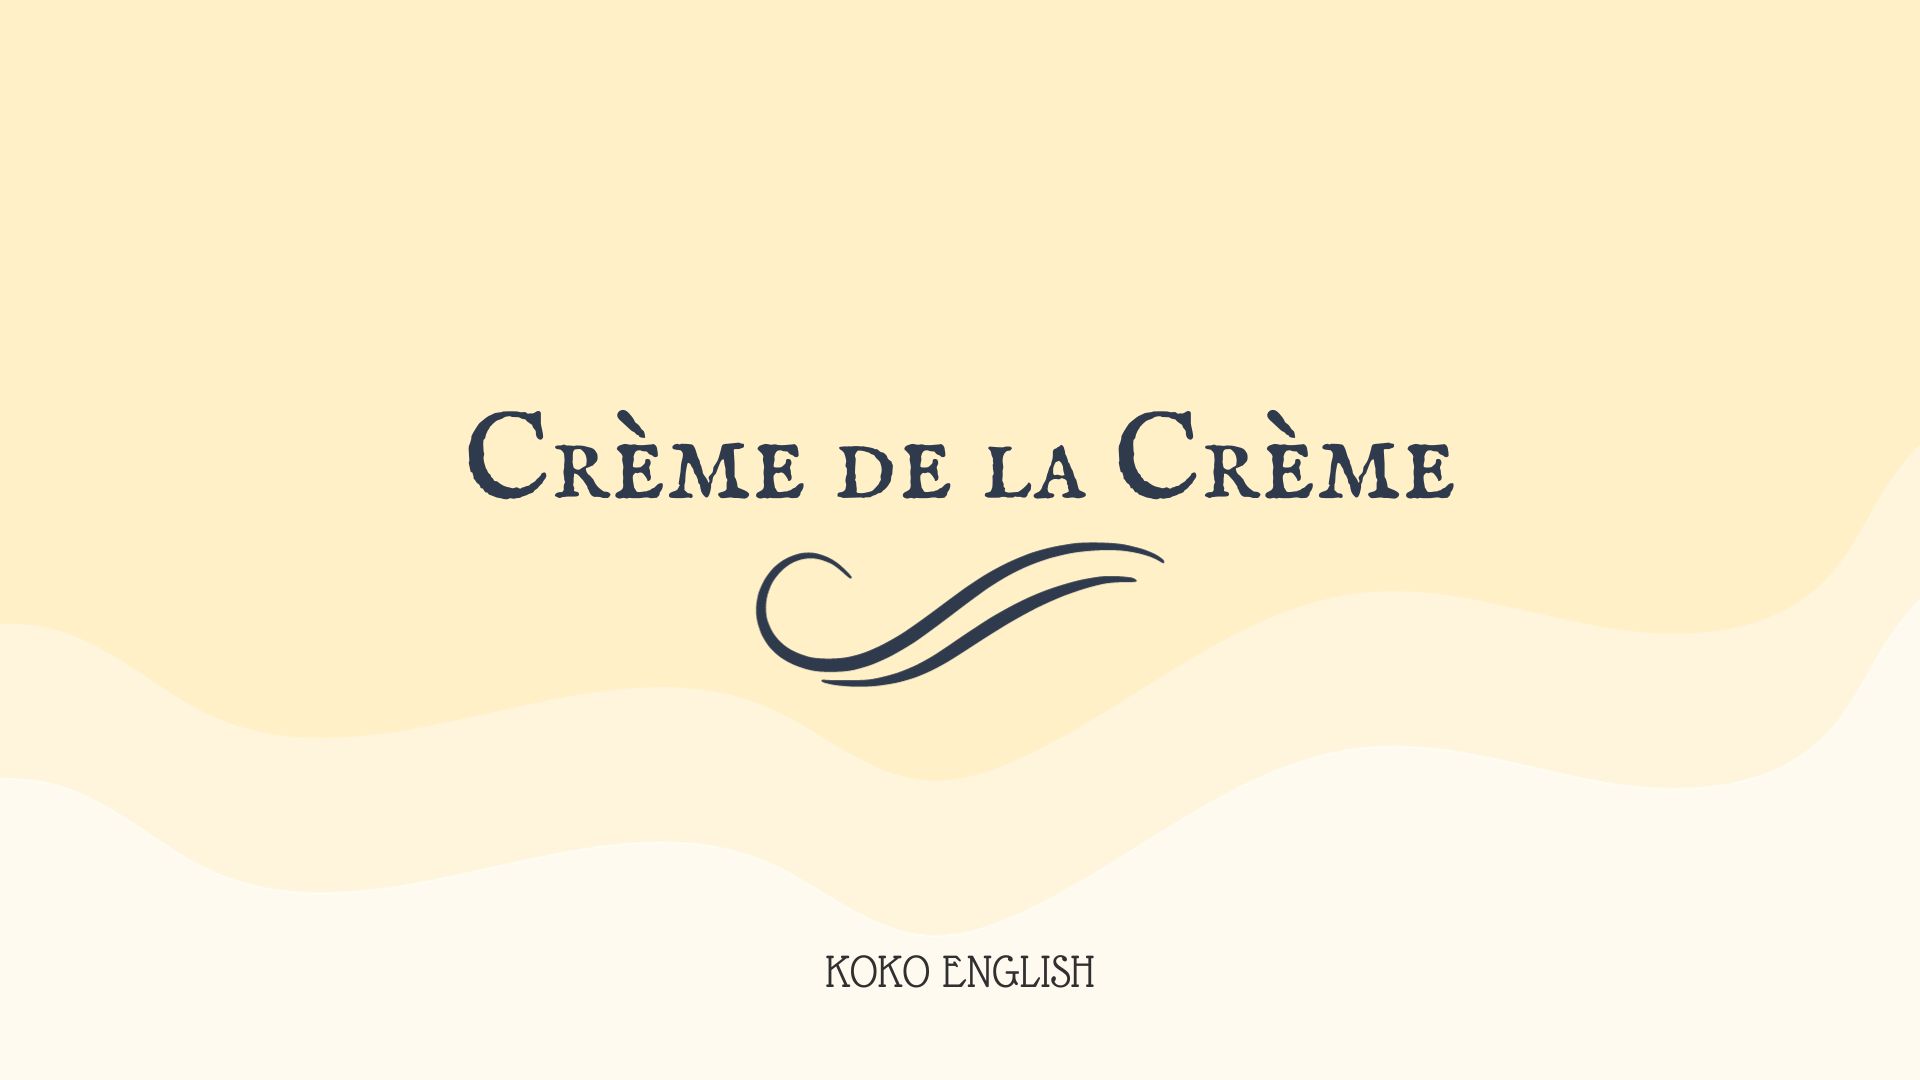 creme de la creme イメージ画像、ロゴ画像、クリームの中のクリーム、エリッククラプトンのクリームではない、cream、肌色、黄色、淡い色を基調とした画像、koko english